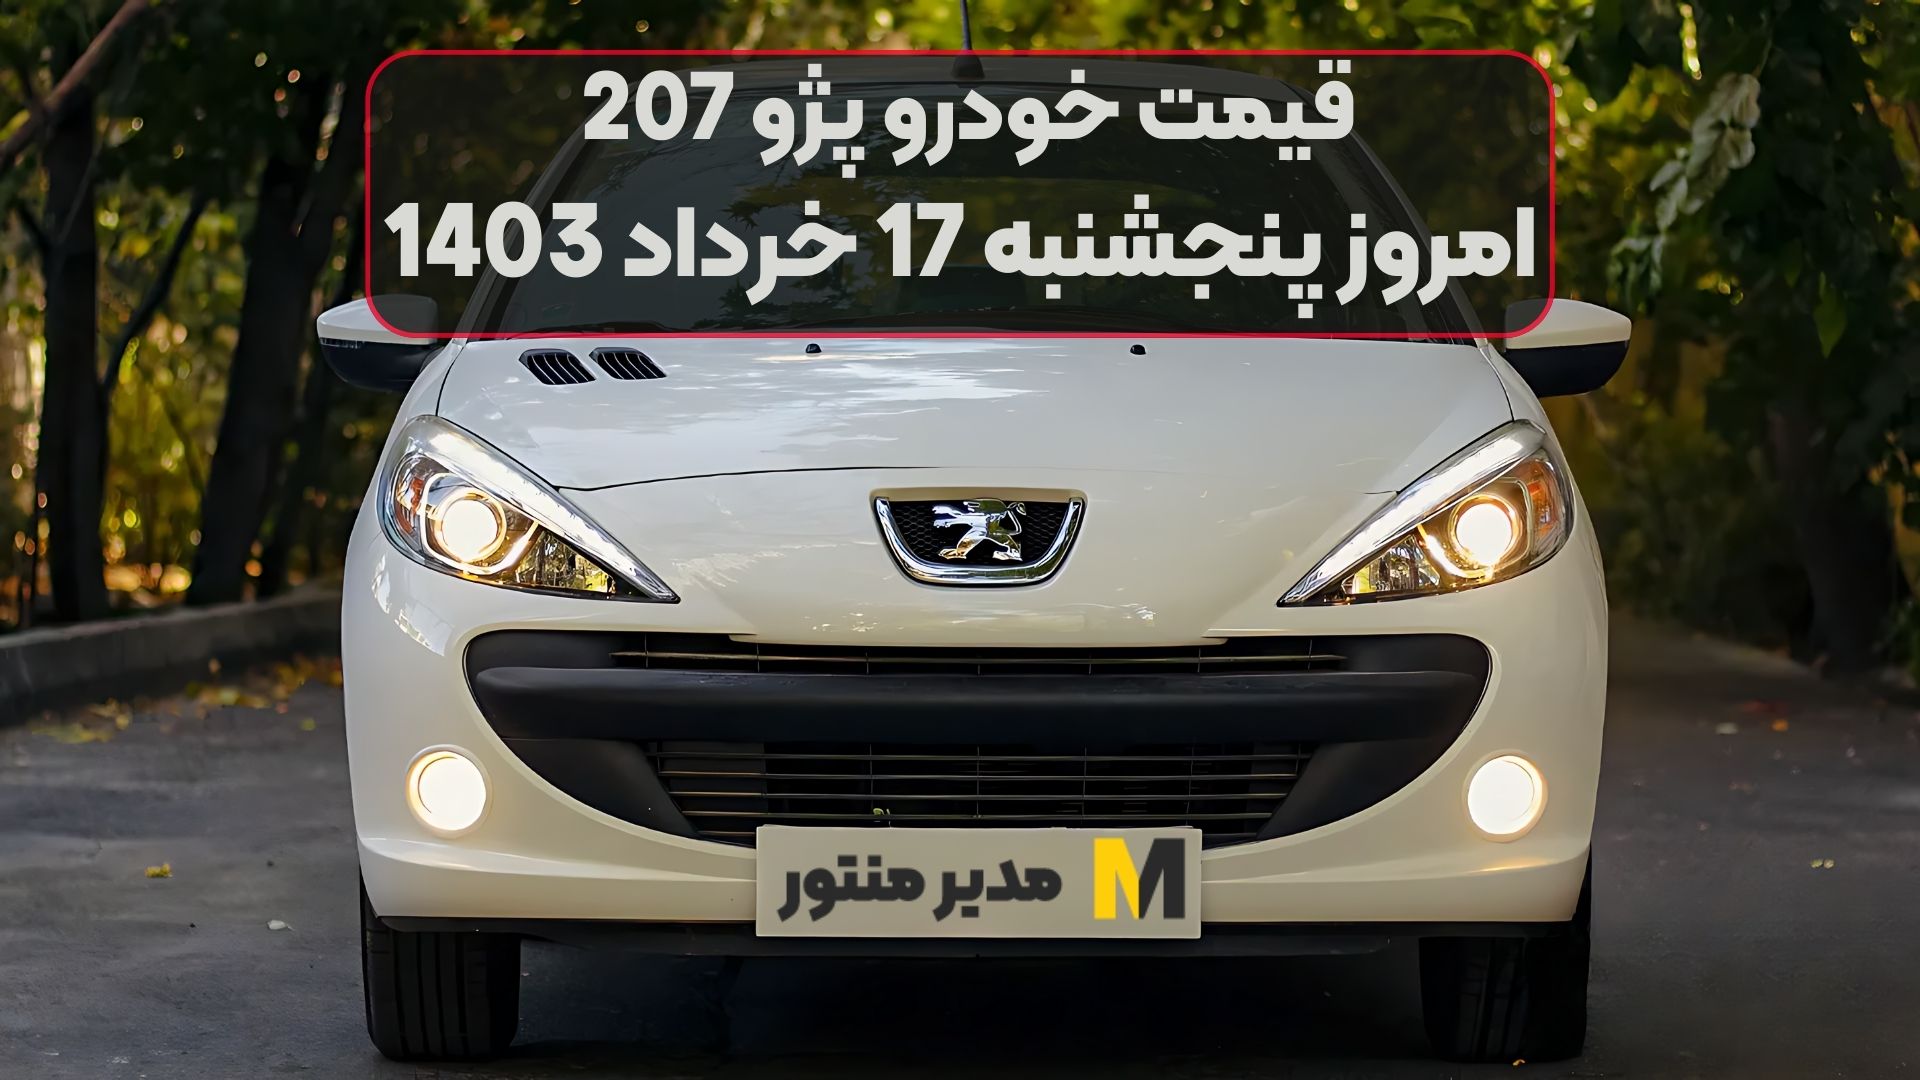 قیمت خودرو پژو 207 امروز پنجشنبه 17ام خرداد 1403